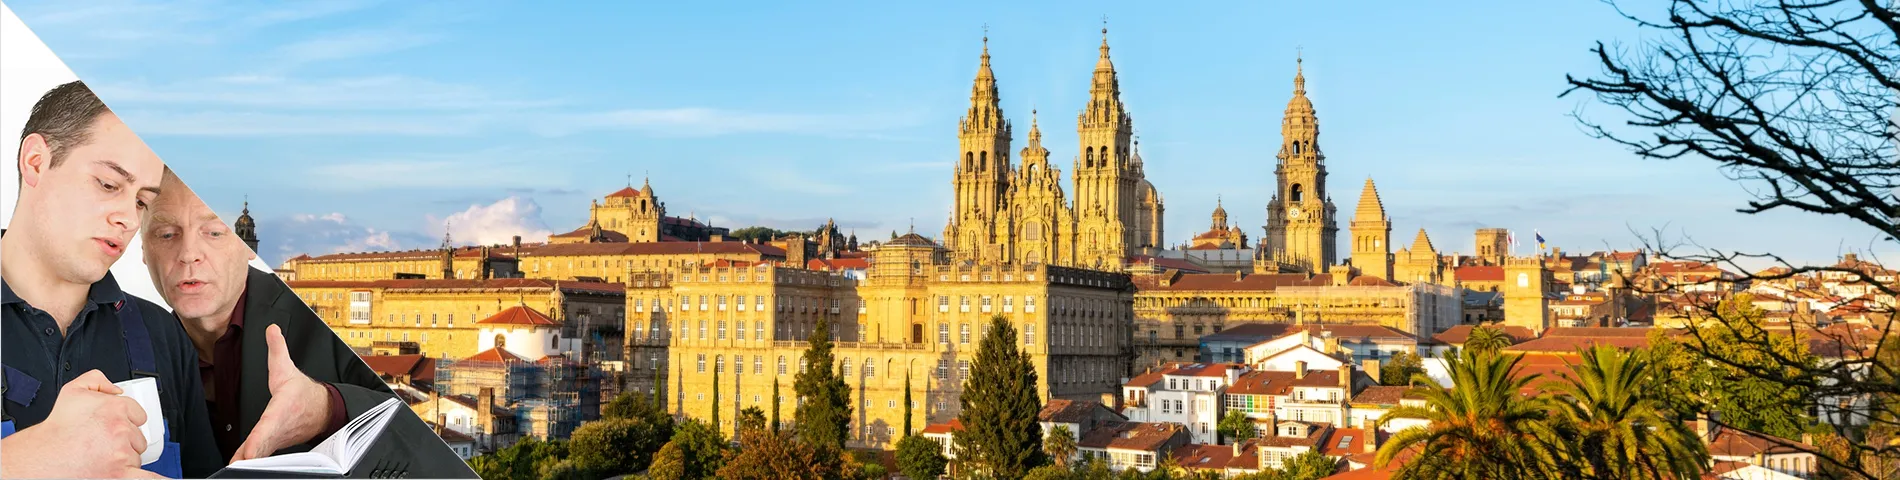 Santiago de Compostela - Výuka jeden na jednoho